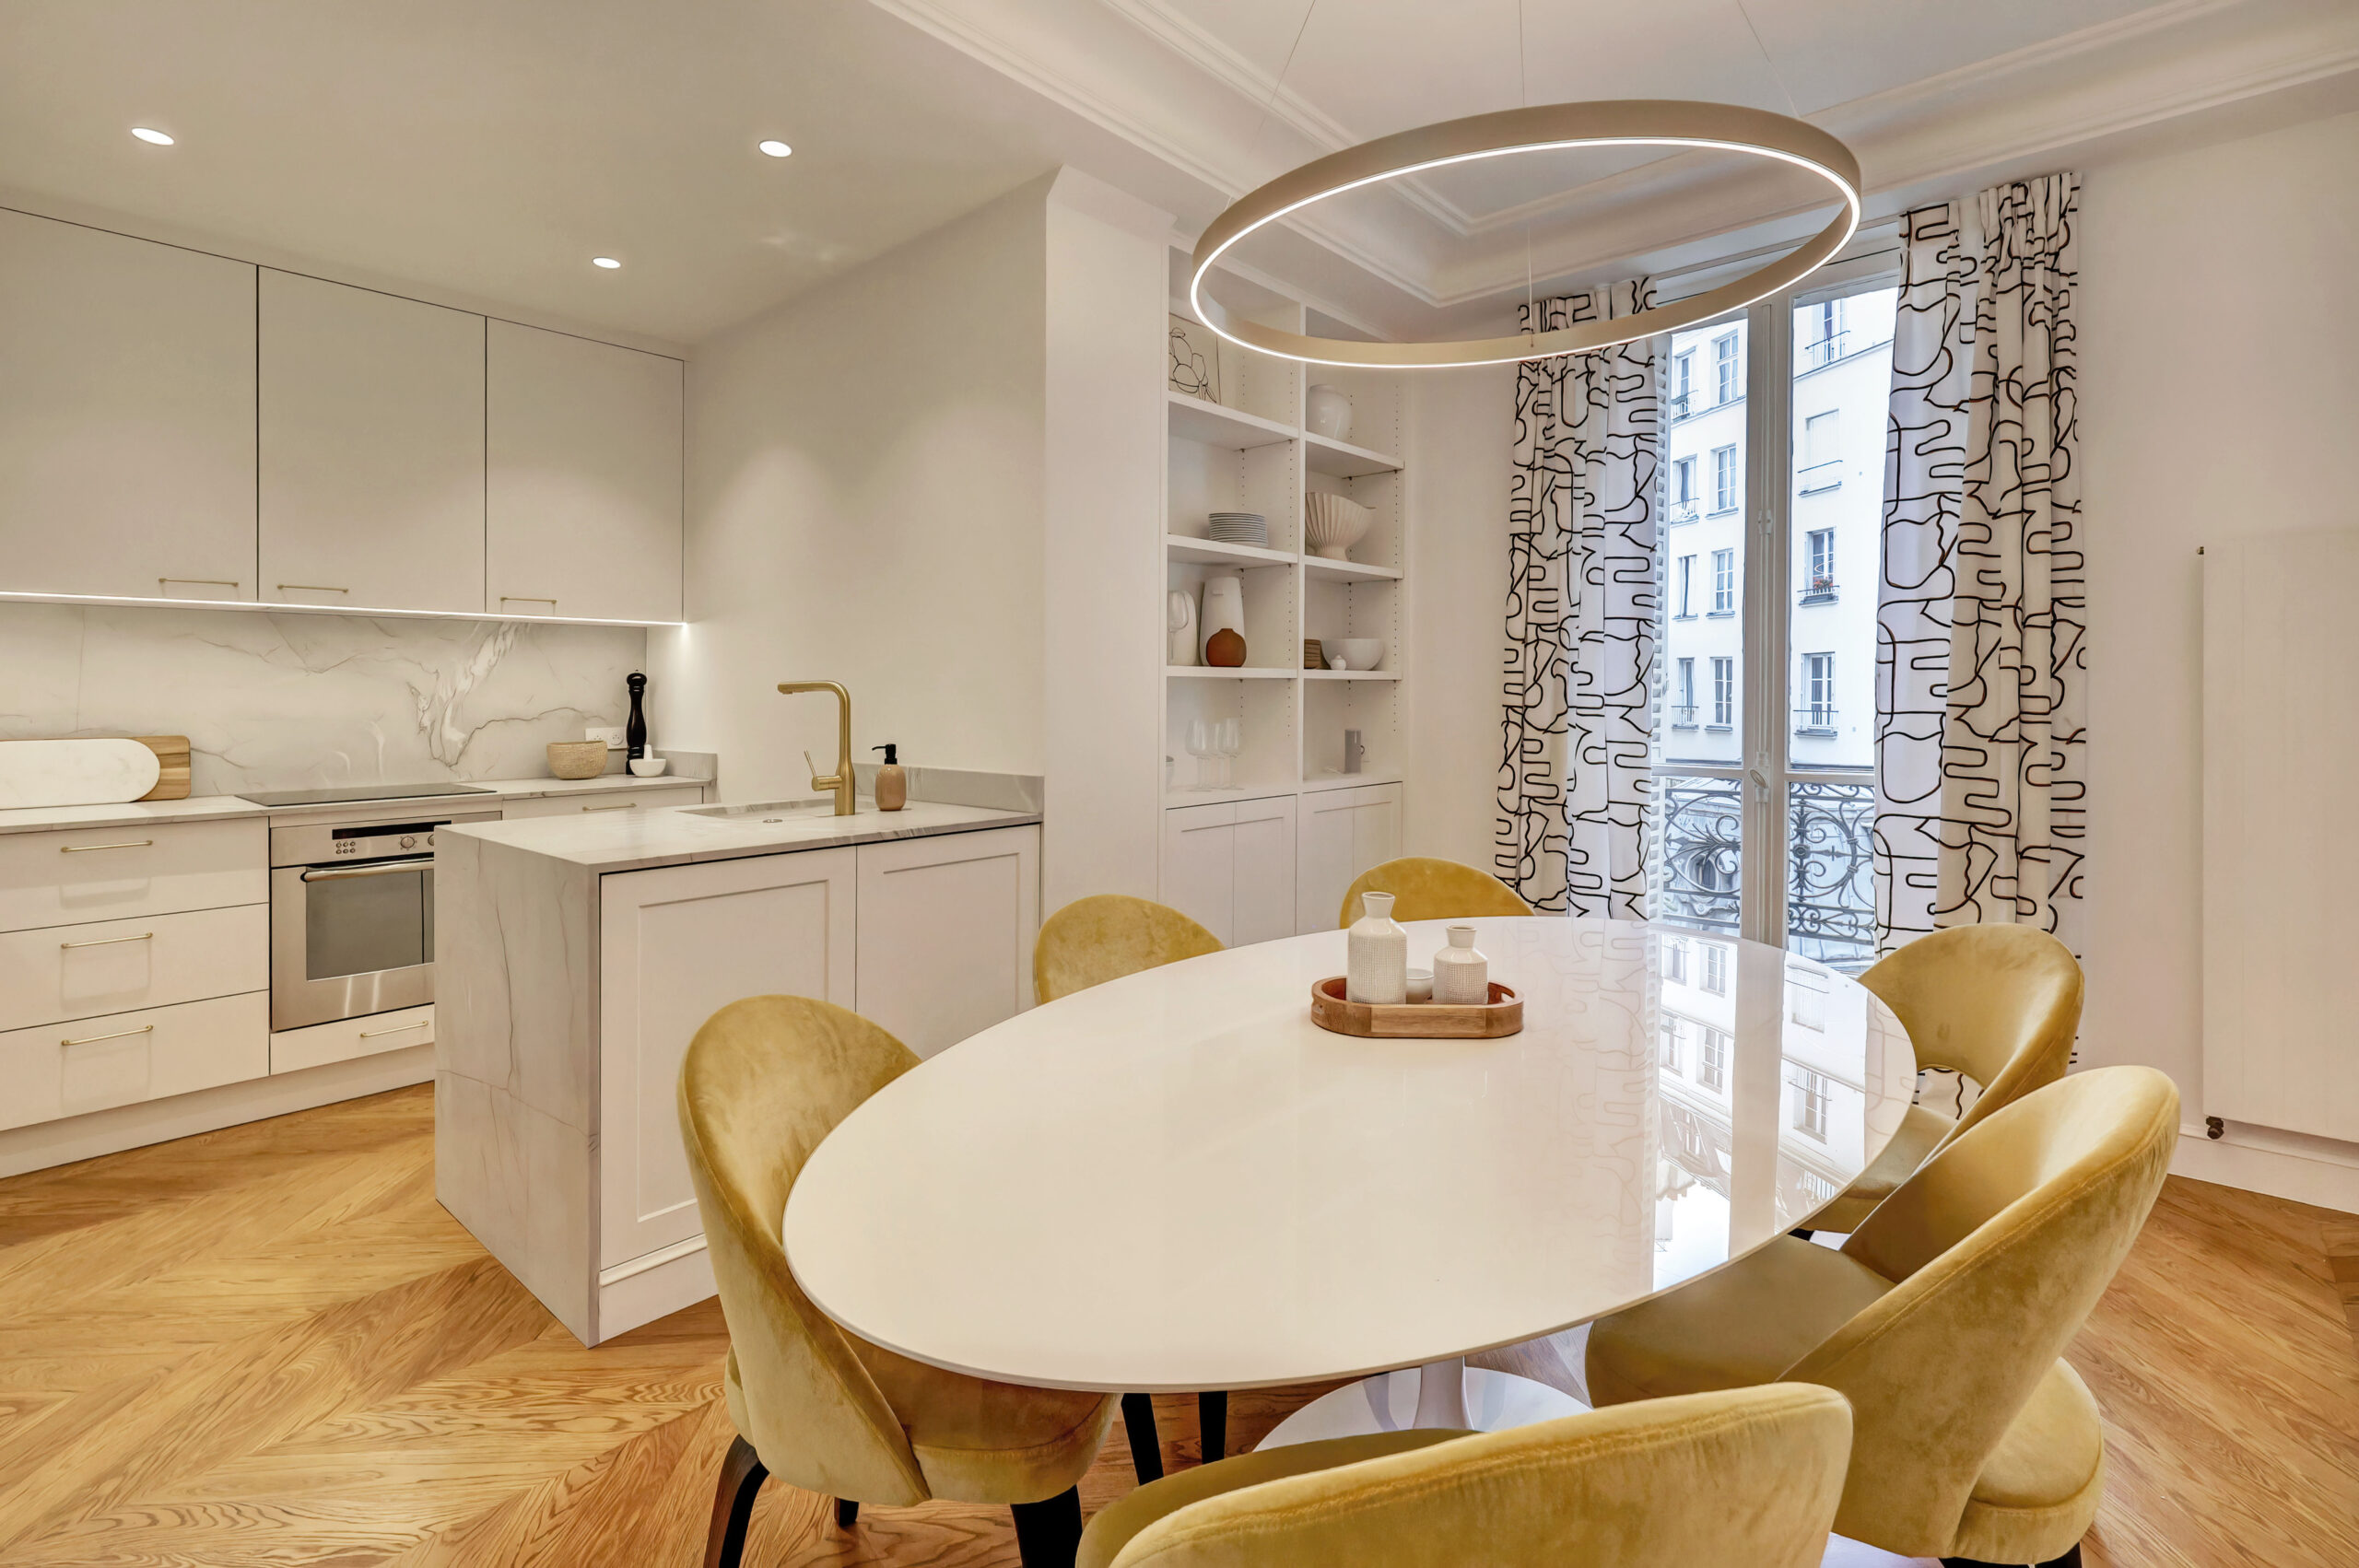 La salle à manger avec parquet en point de Hongrie et la corniche en staff - architecte d'intérieur Flora Auvray